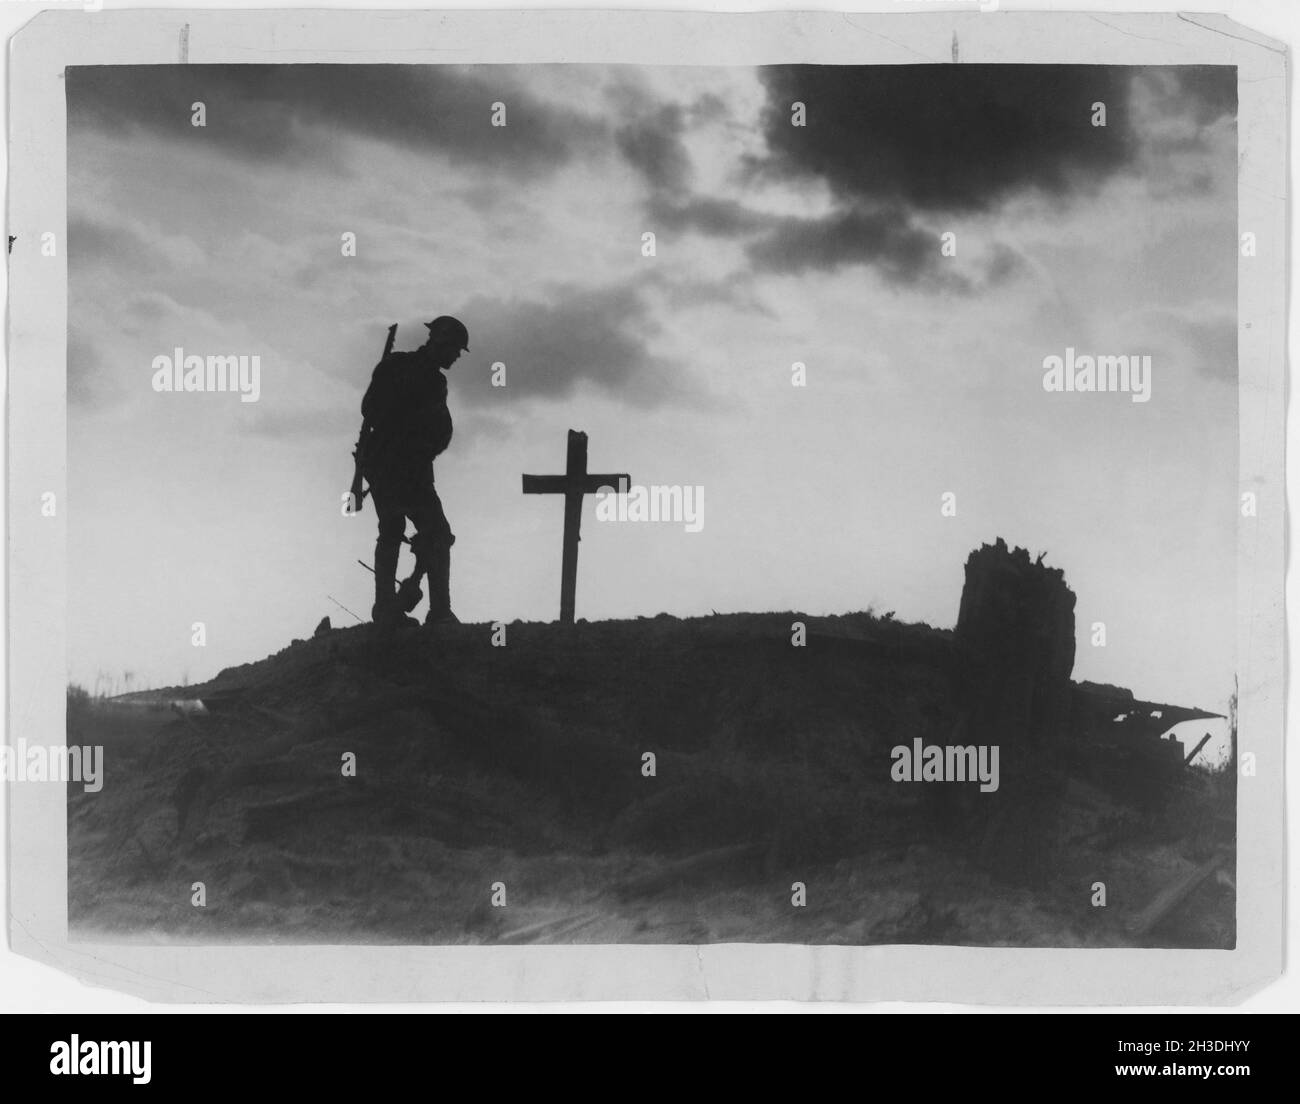 Erster Weltkrieg 1914-1918. Britischer Soldat und ein Grab, das mit einem Holzkreuz in Silhouette auf einem Hügel markiert ist. Stockfoto